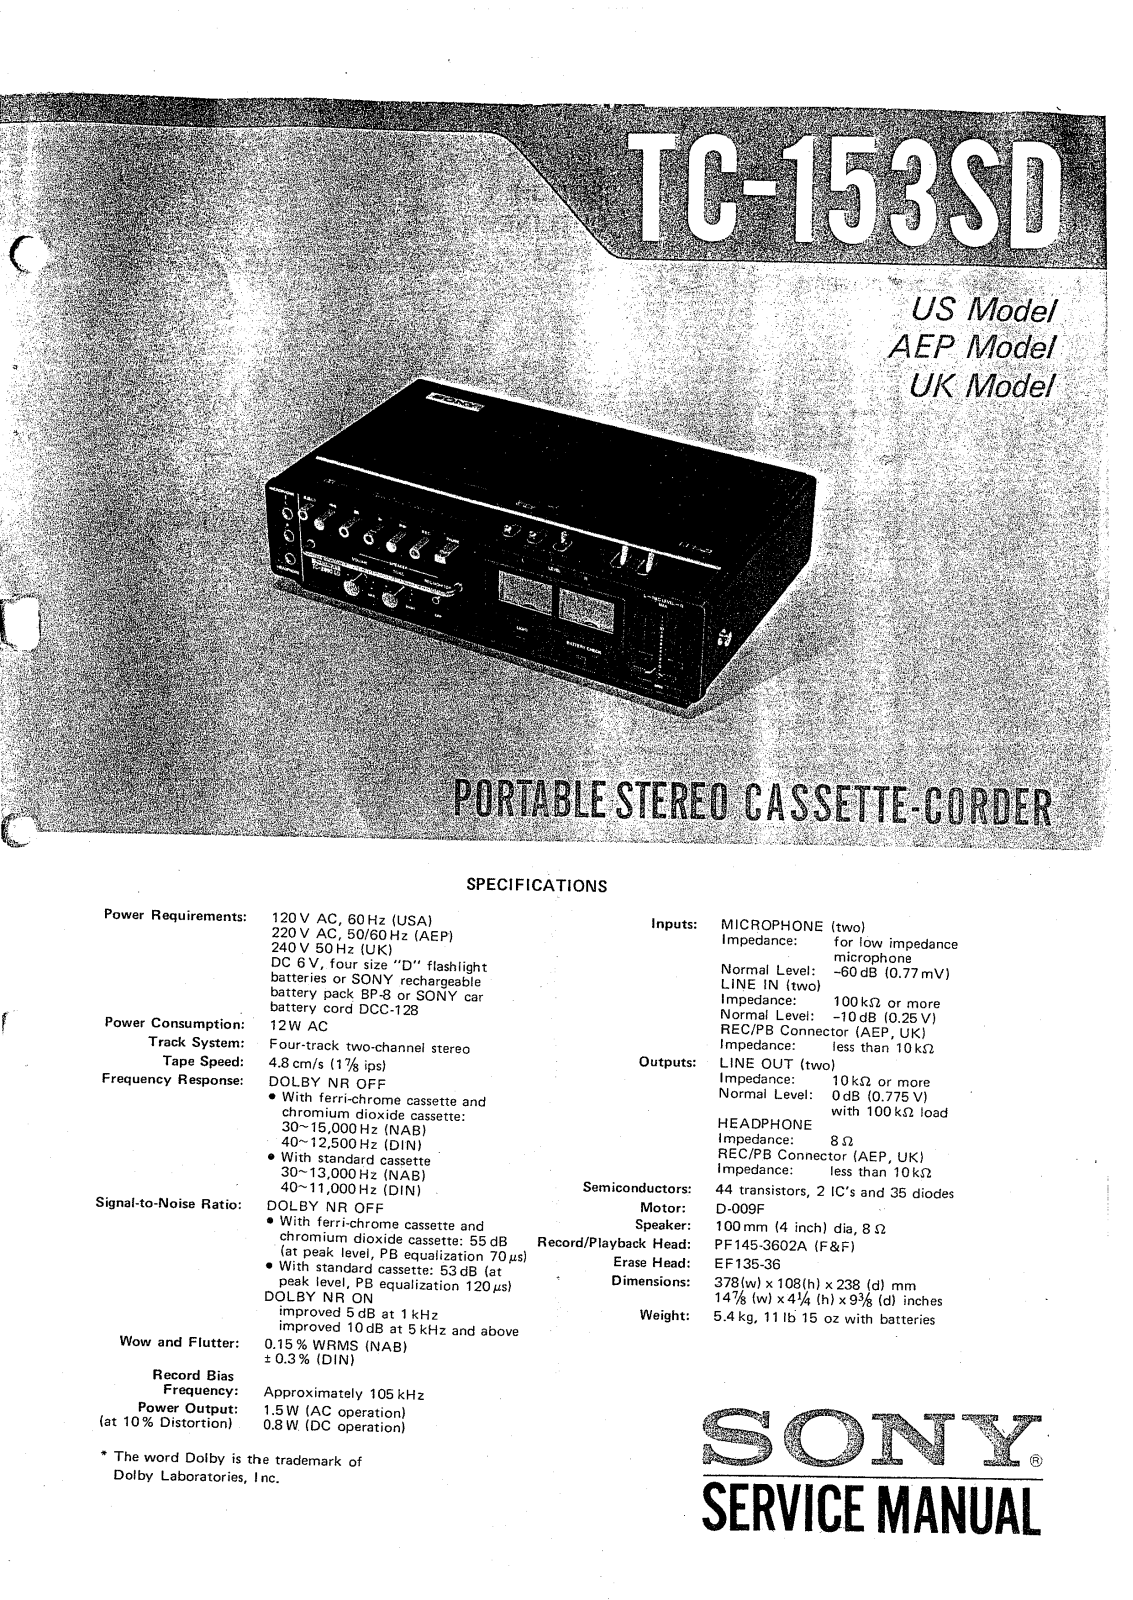 Sony TC-153-SD Service manual